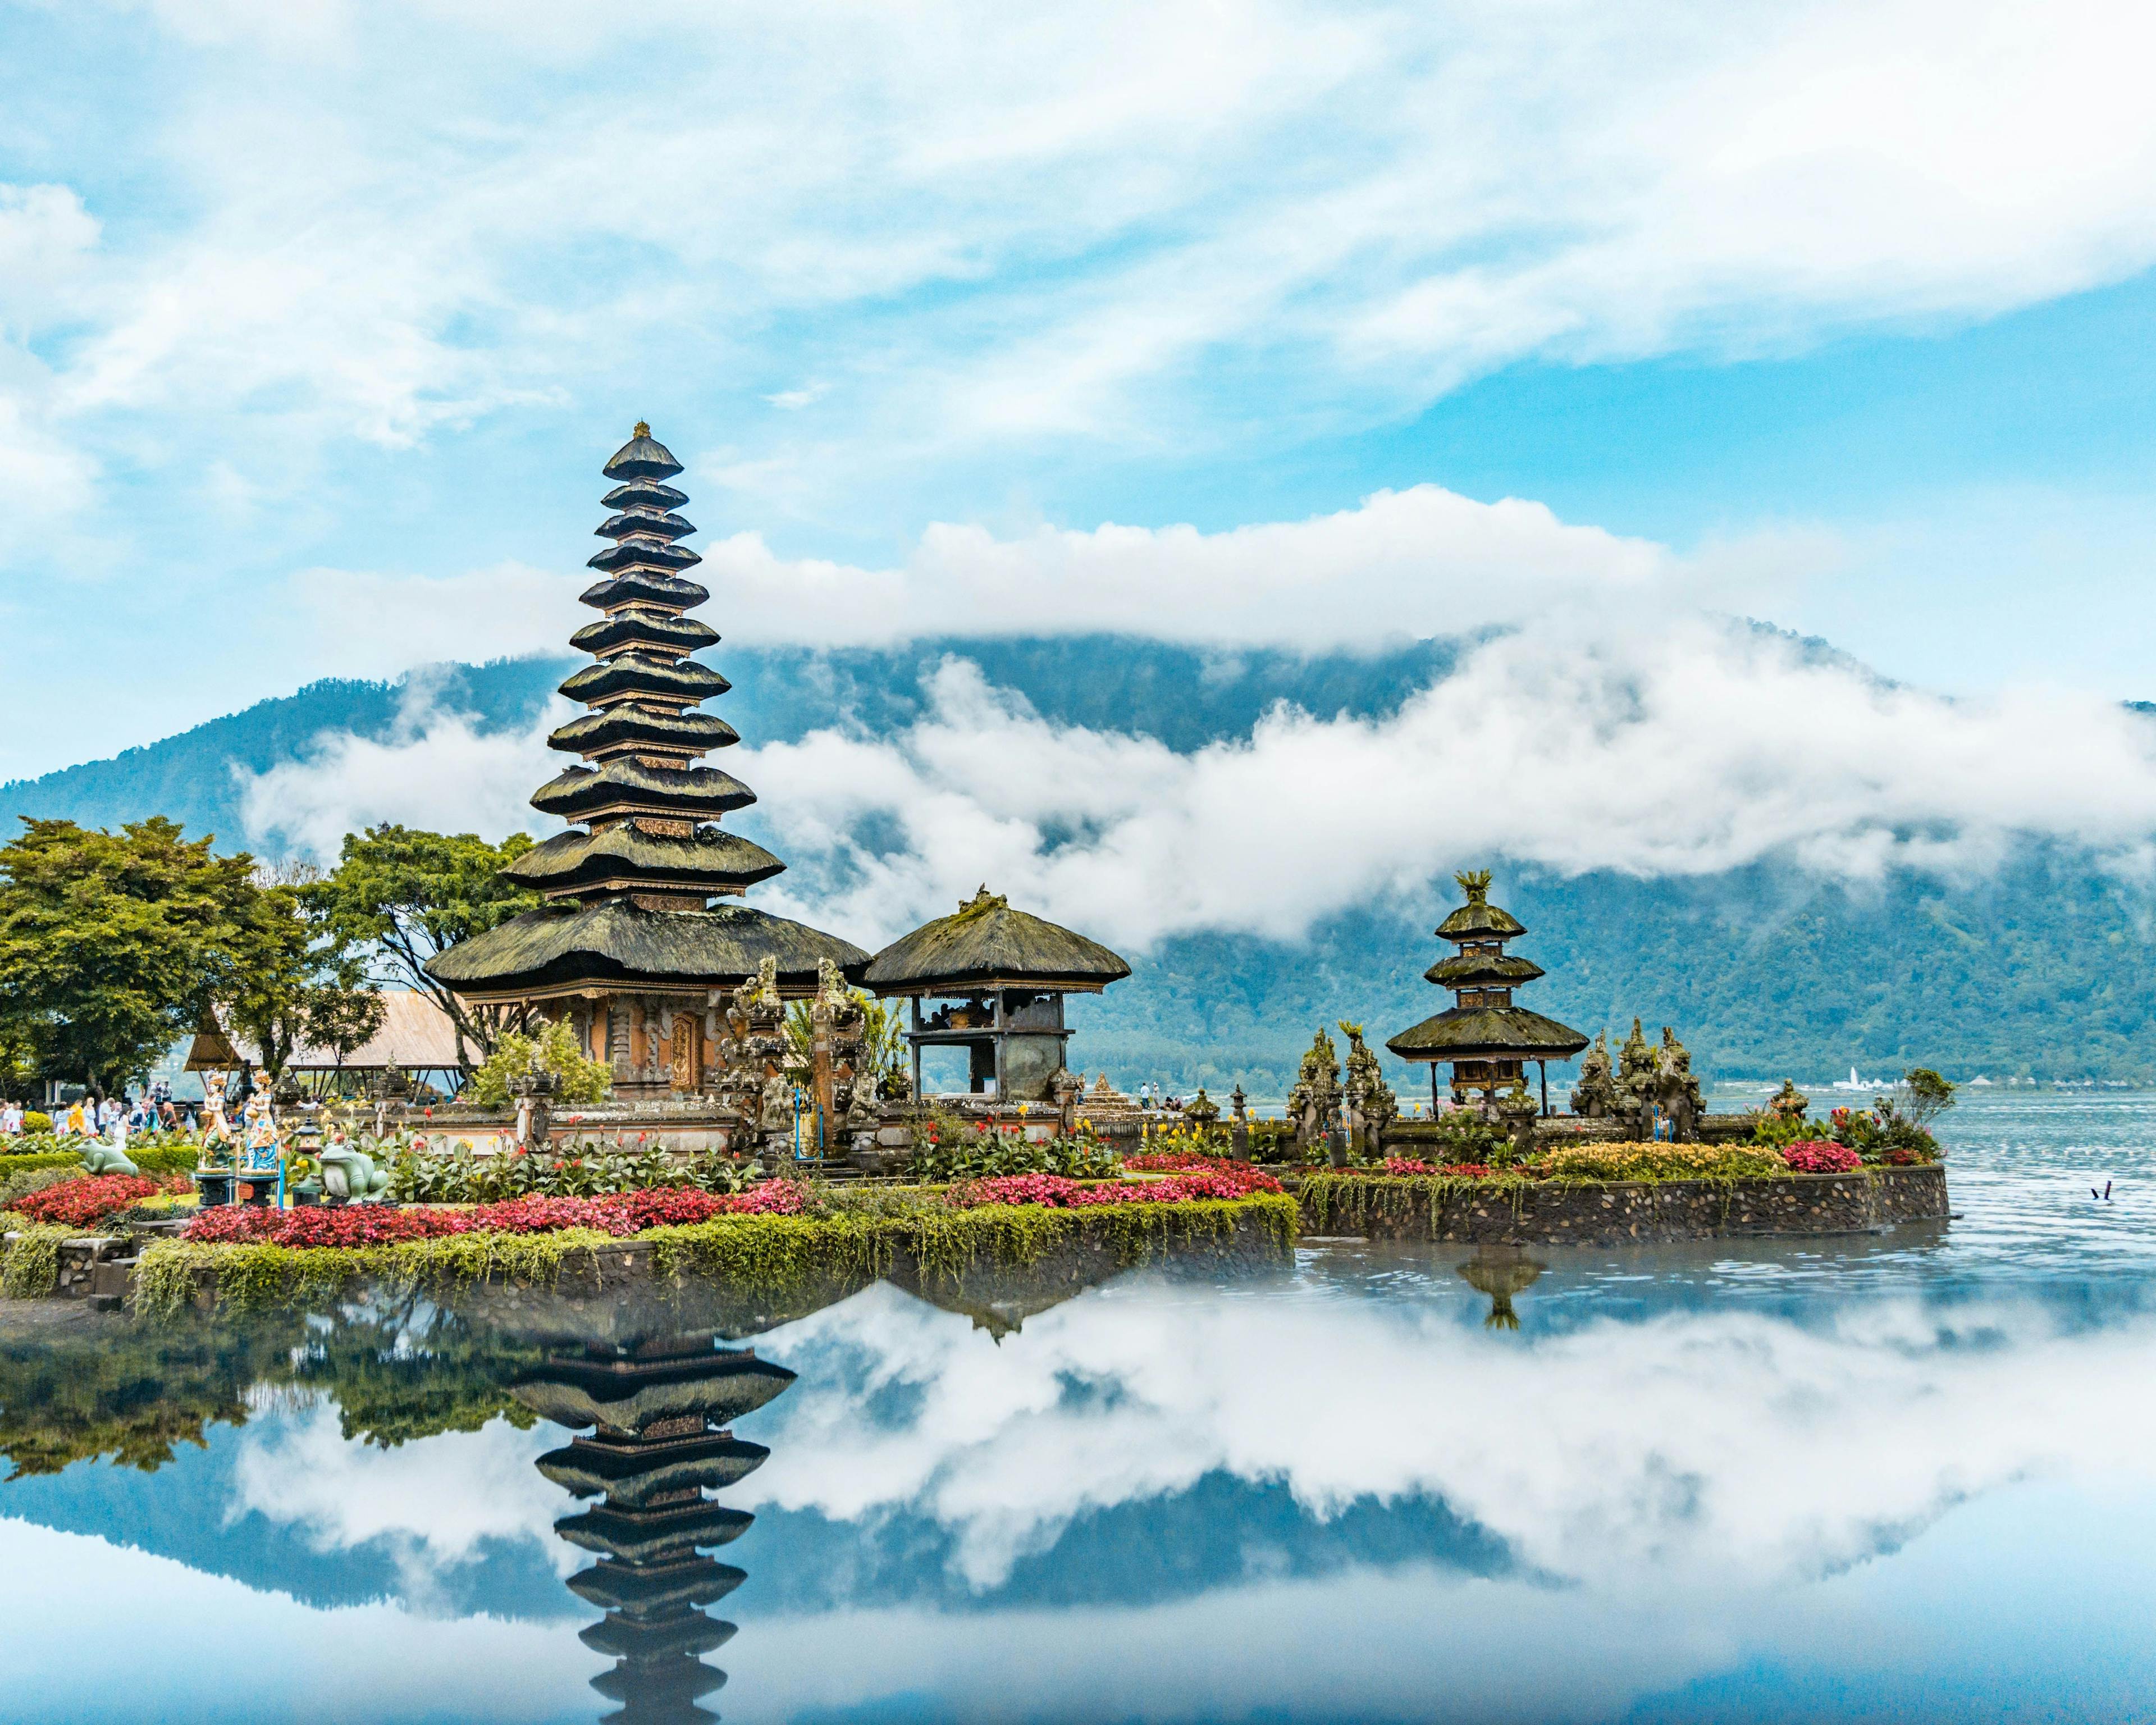 Dra på ferie til Bali med gruppeturer fra Backpacker